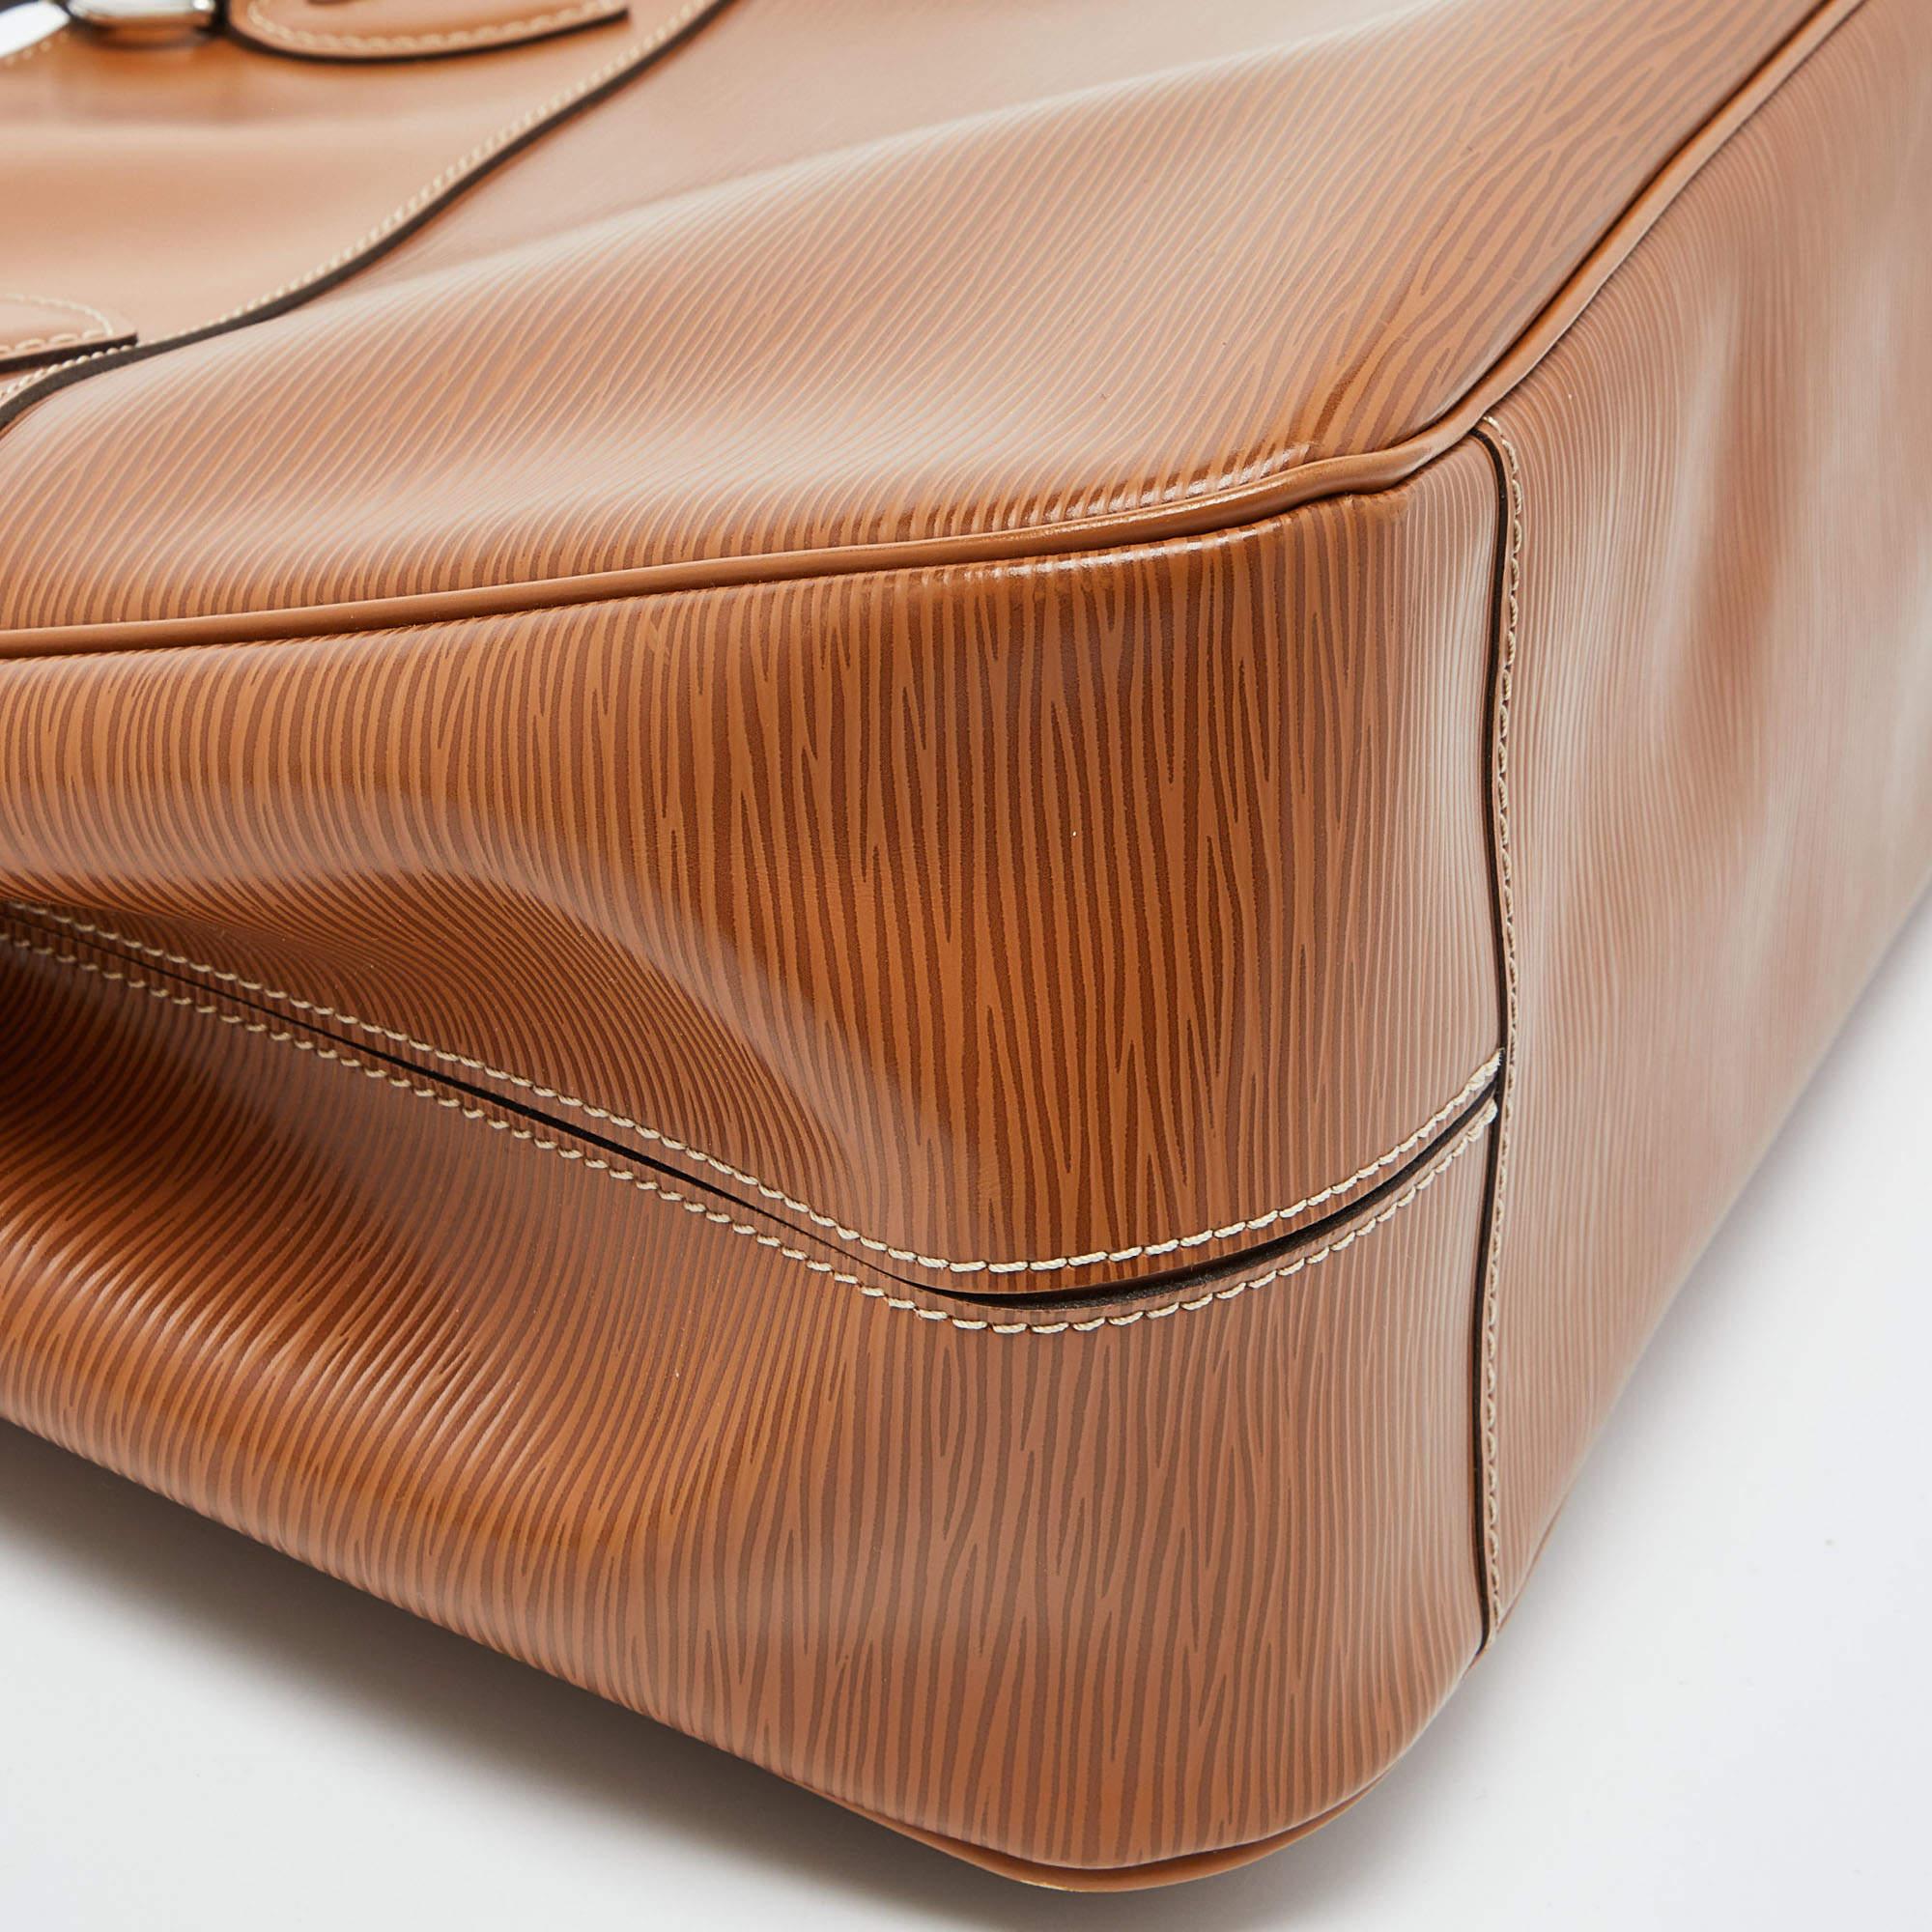 Louis Vuitton Cannelle Epi Leather Passy PM Bag 2